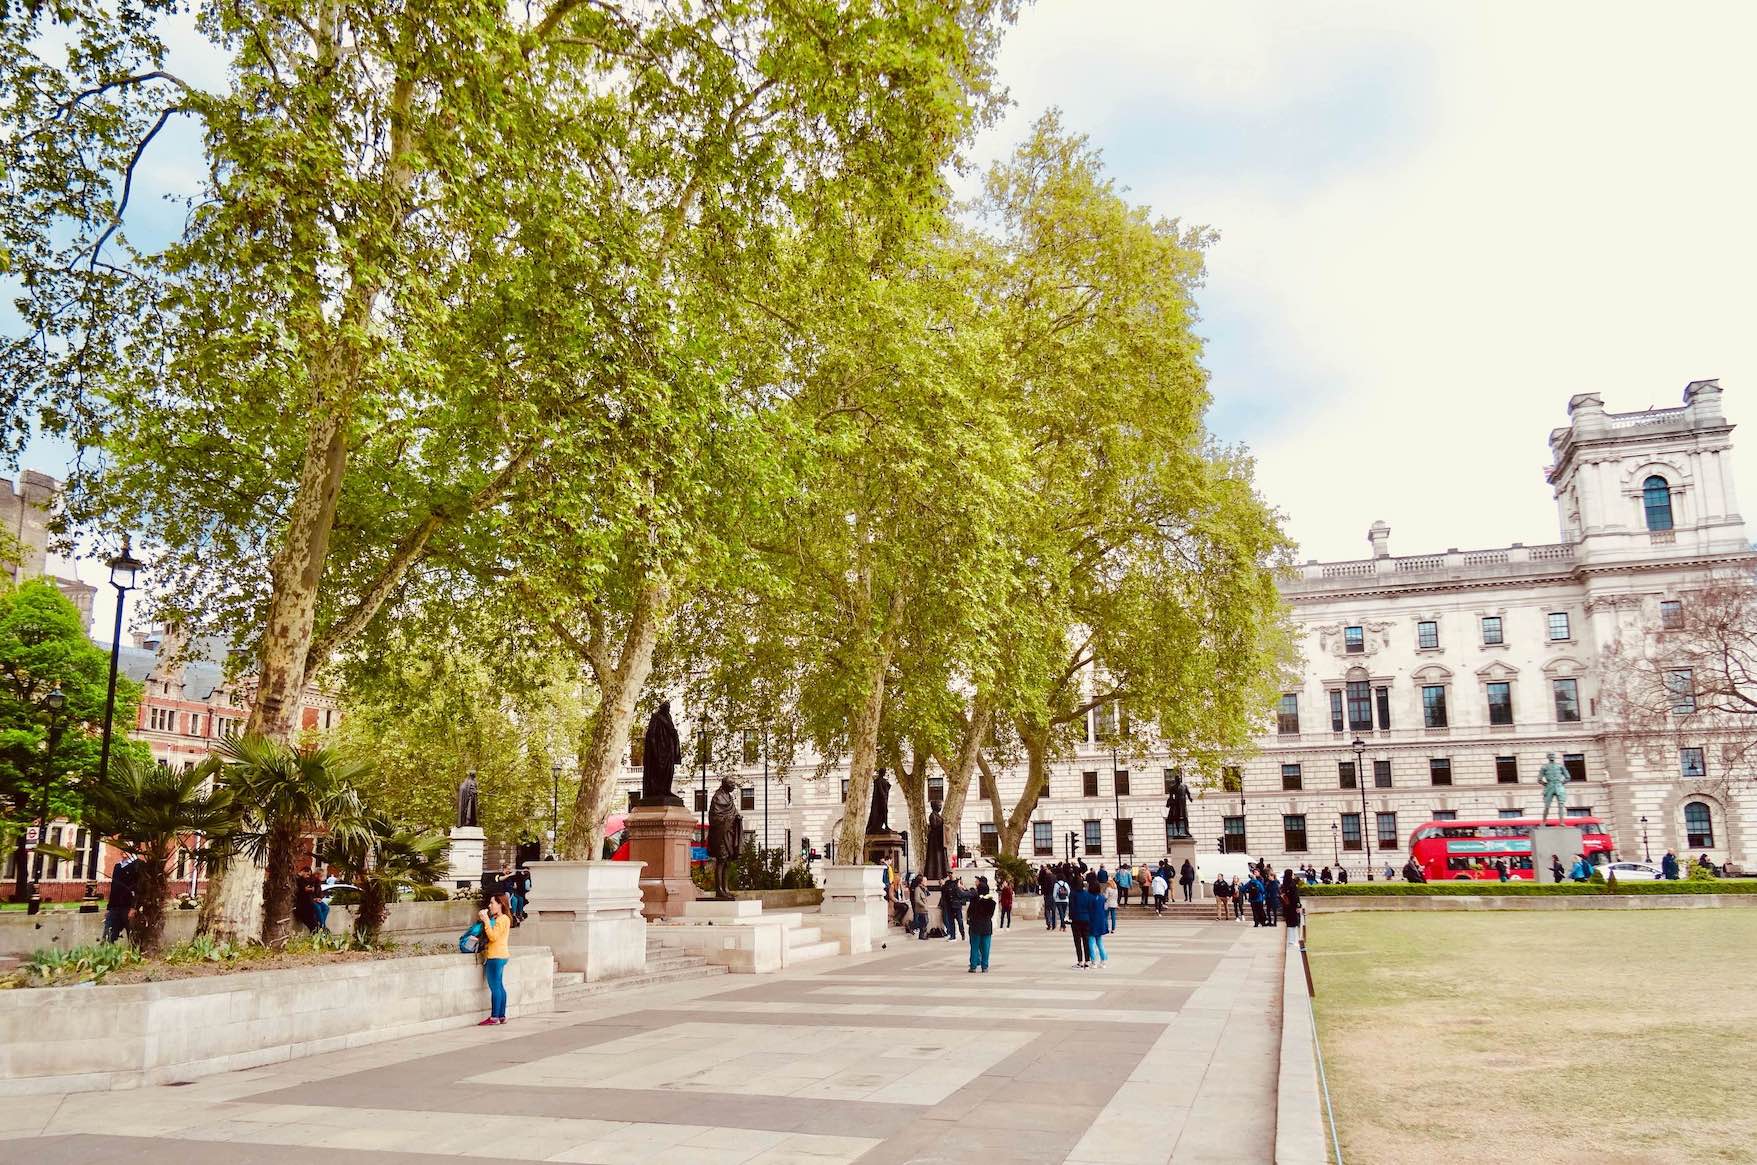 Visit Parliament Square London.